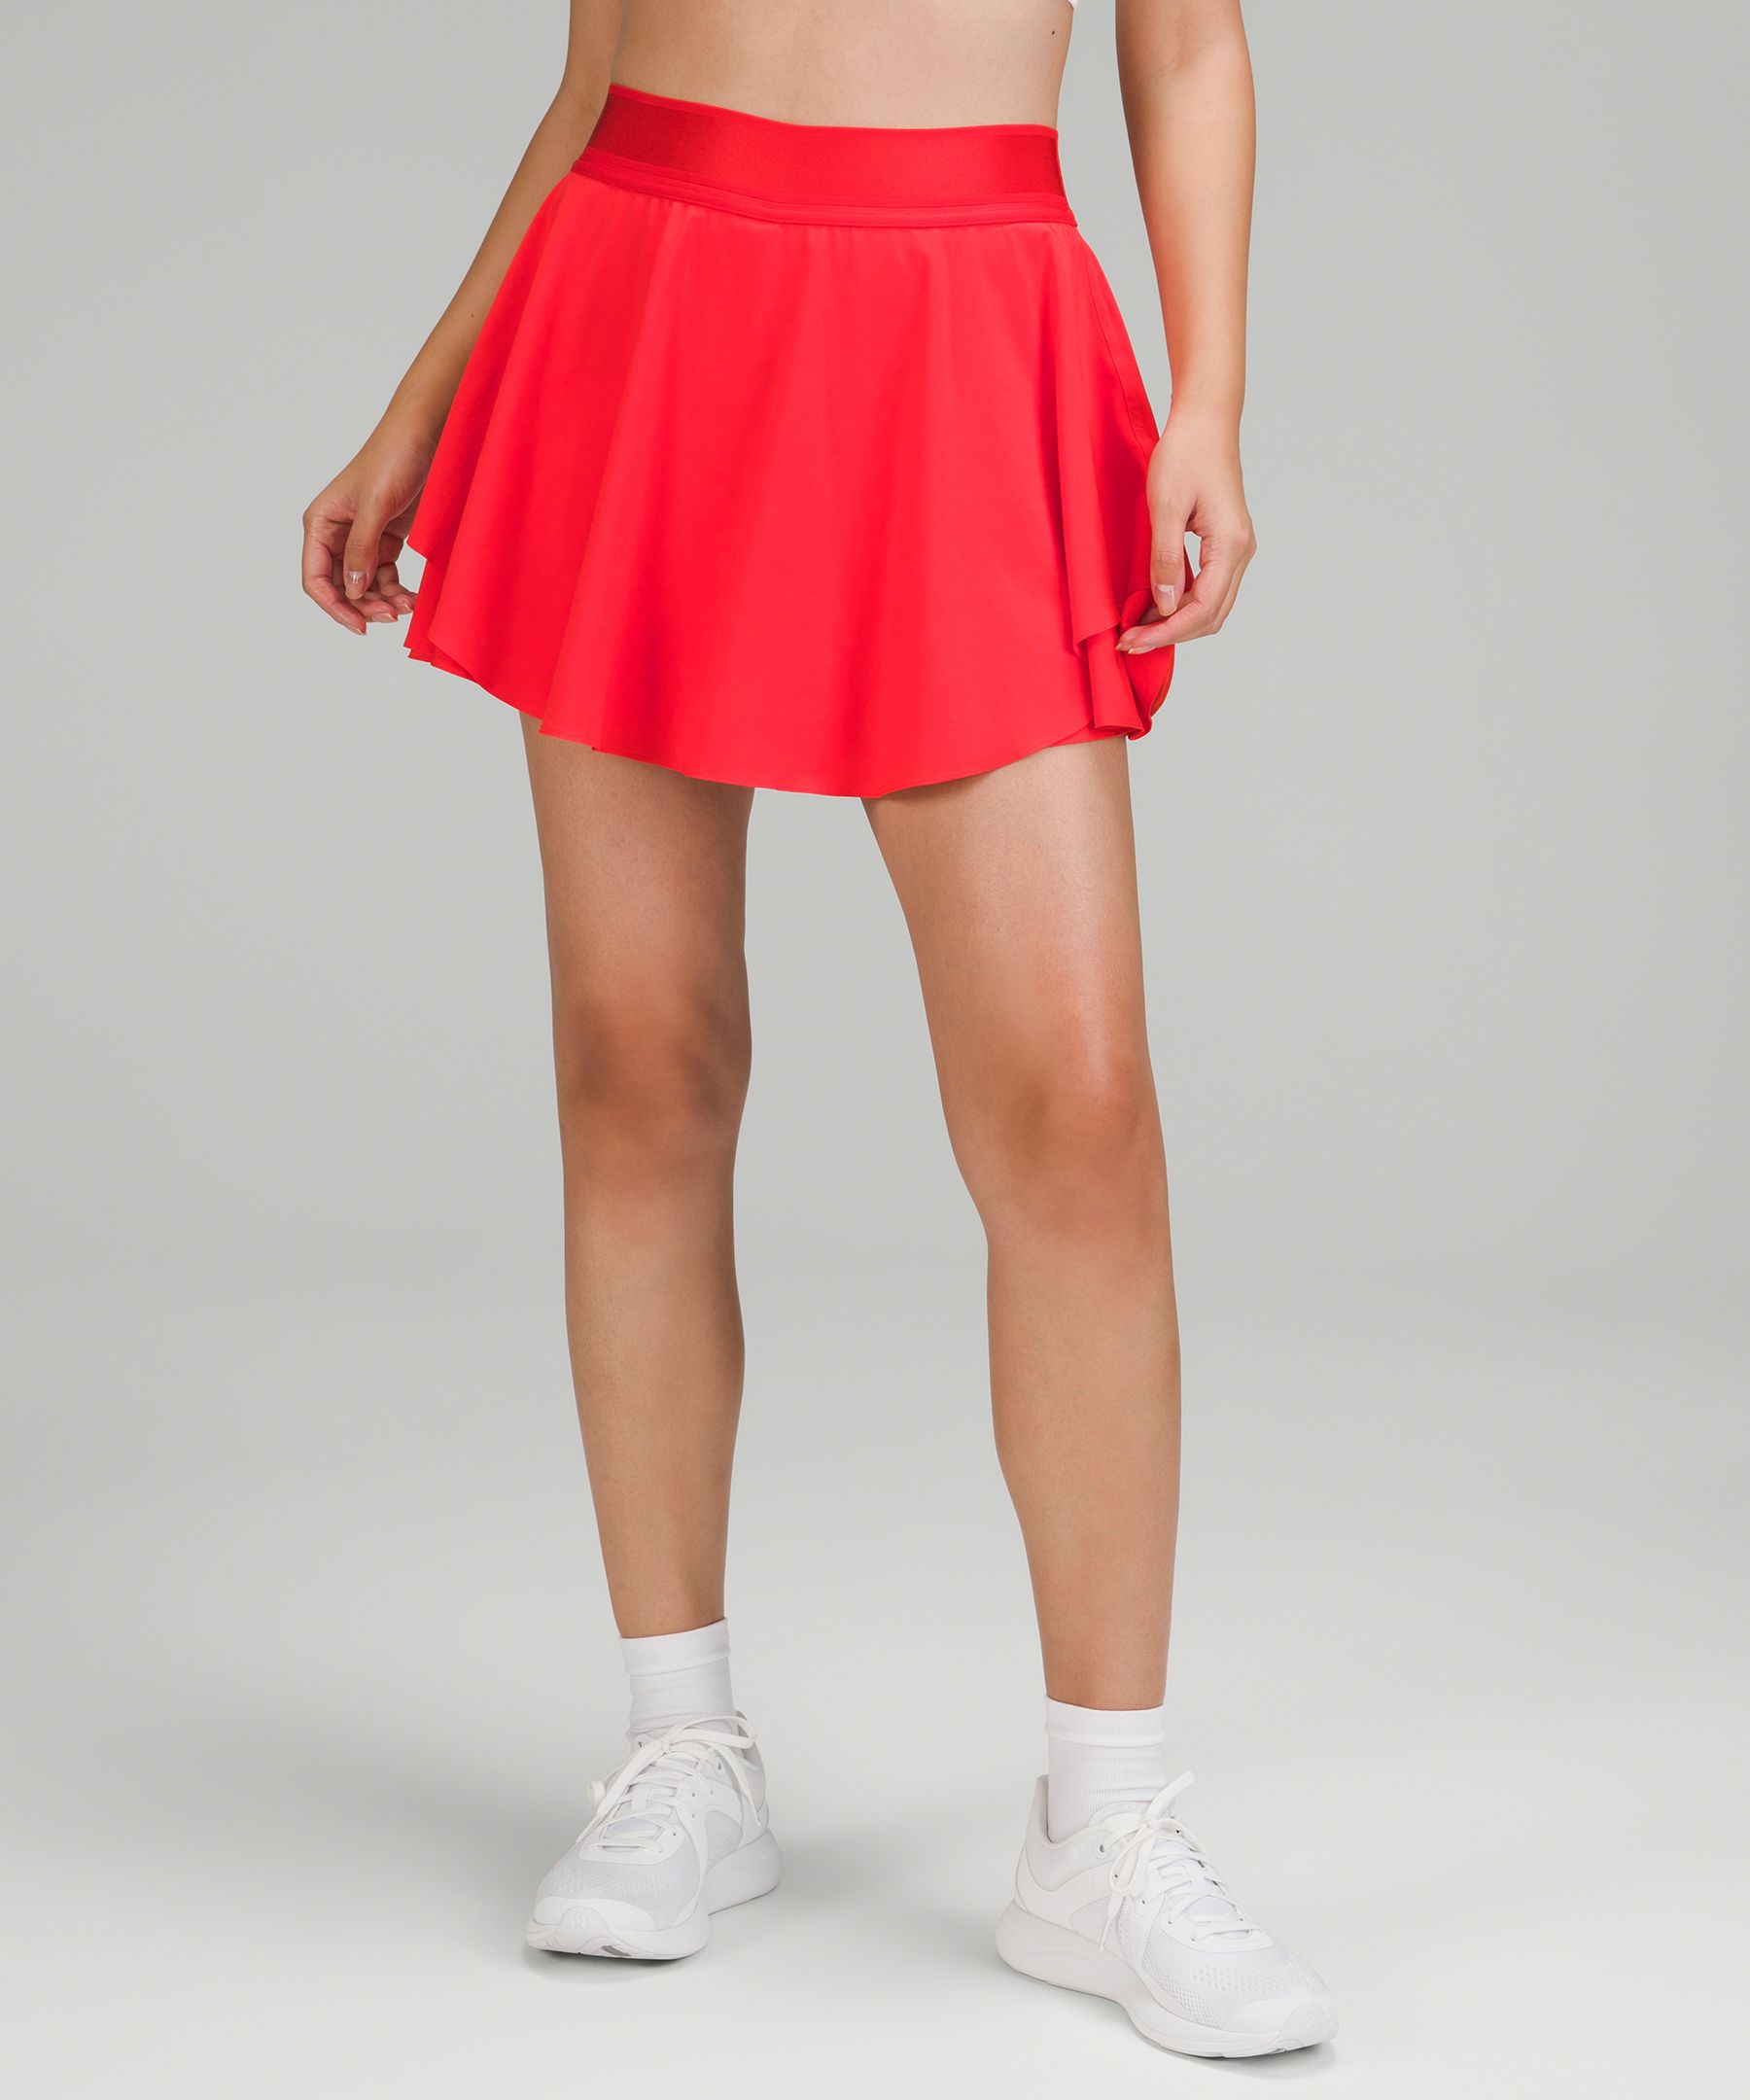 Lululemon Court Rival High-rise Tennis Skirt Long